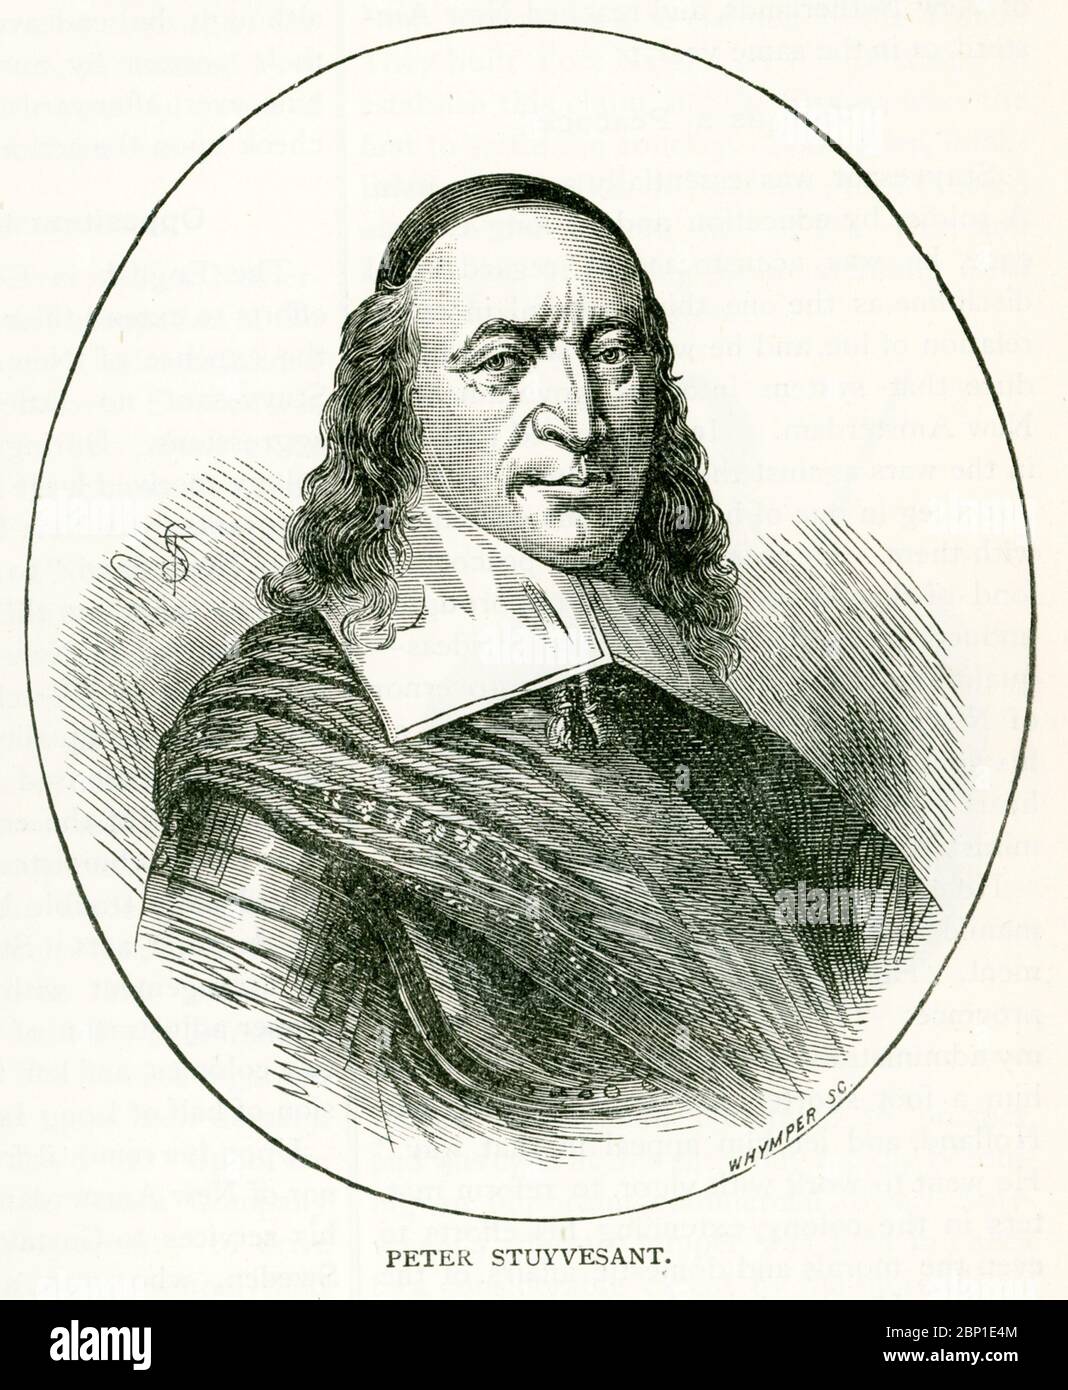 Peter Stuyvesant war der letzte niederländische Generaldirektor der Kolonie Neuniederland. Er diente von 1647 bis 1664, als das Gebiet an die Engländer übergeben wurde. Stockfoto